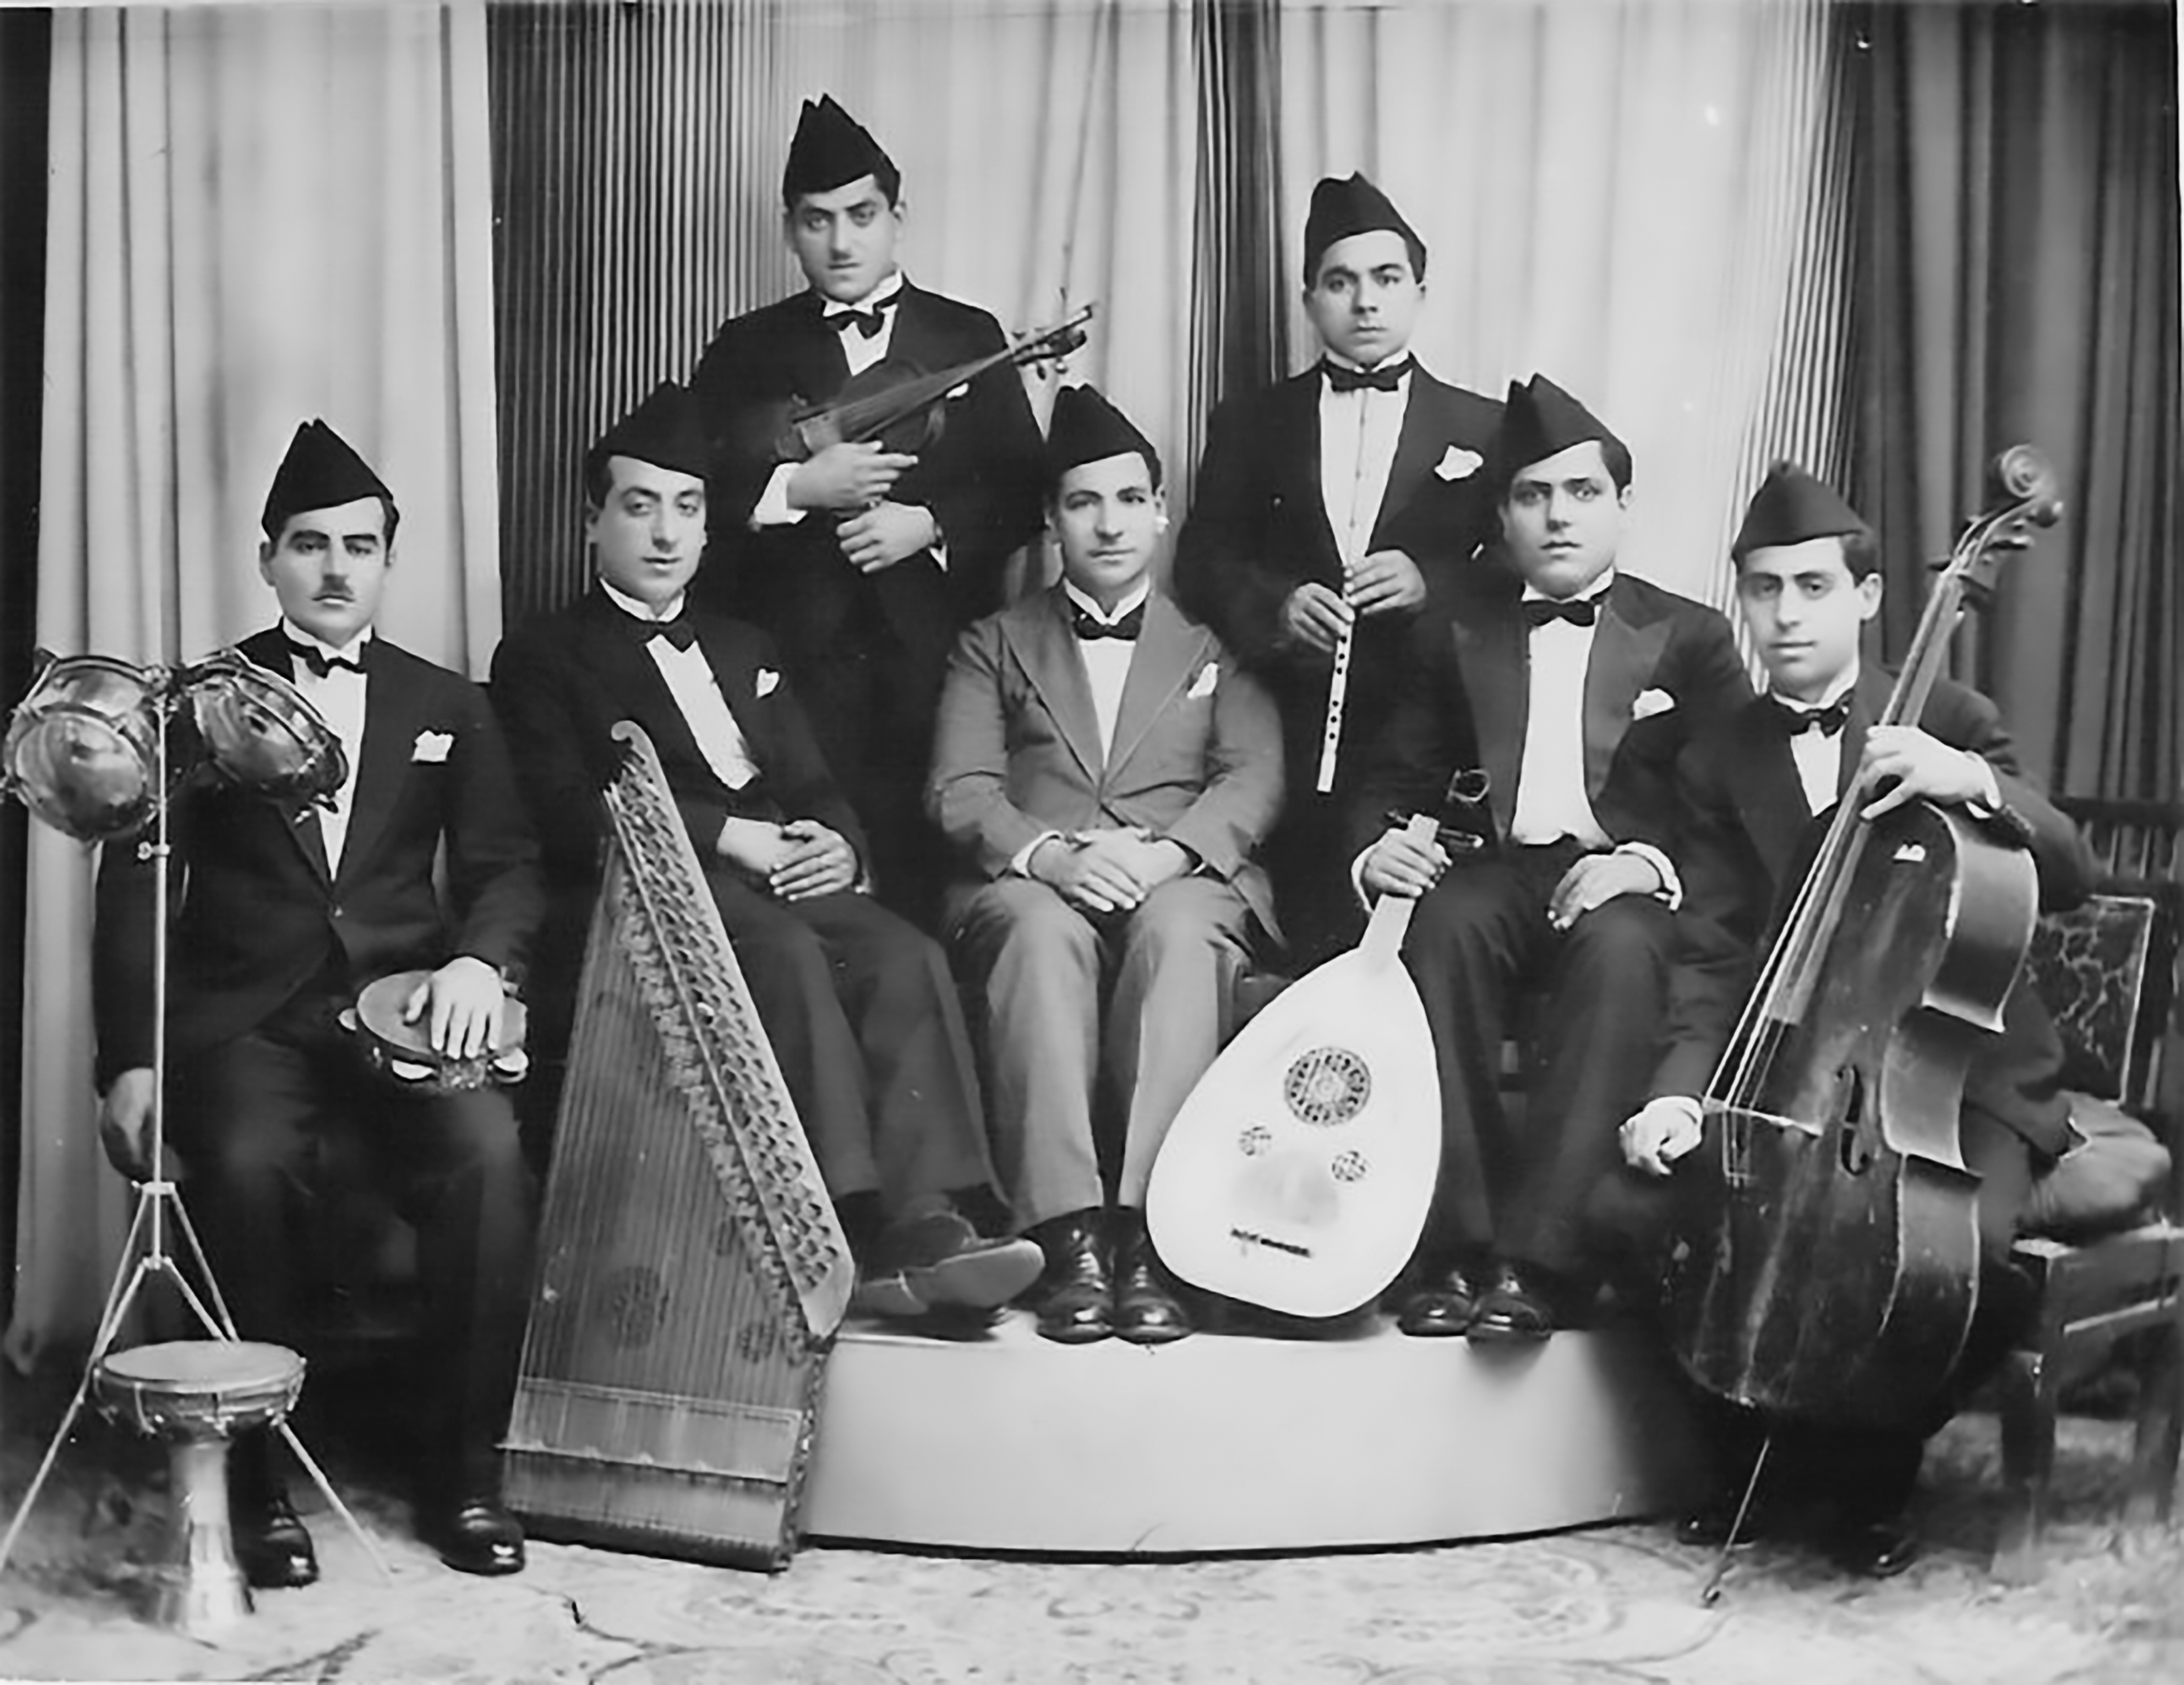 Dāʾūd & Ṣalāḥ al-Kuwaytī with Yūsuf Zaʿarūr and their group in Baghdad in 1935.